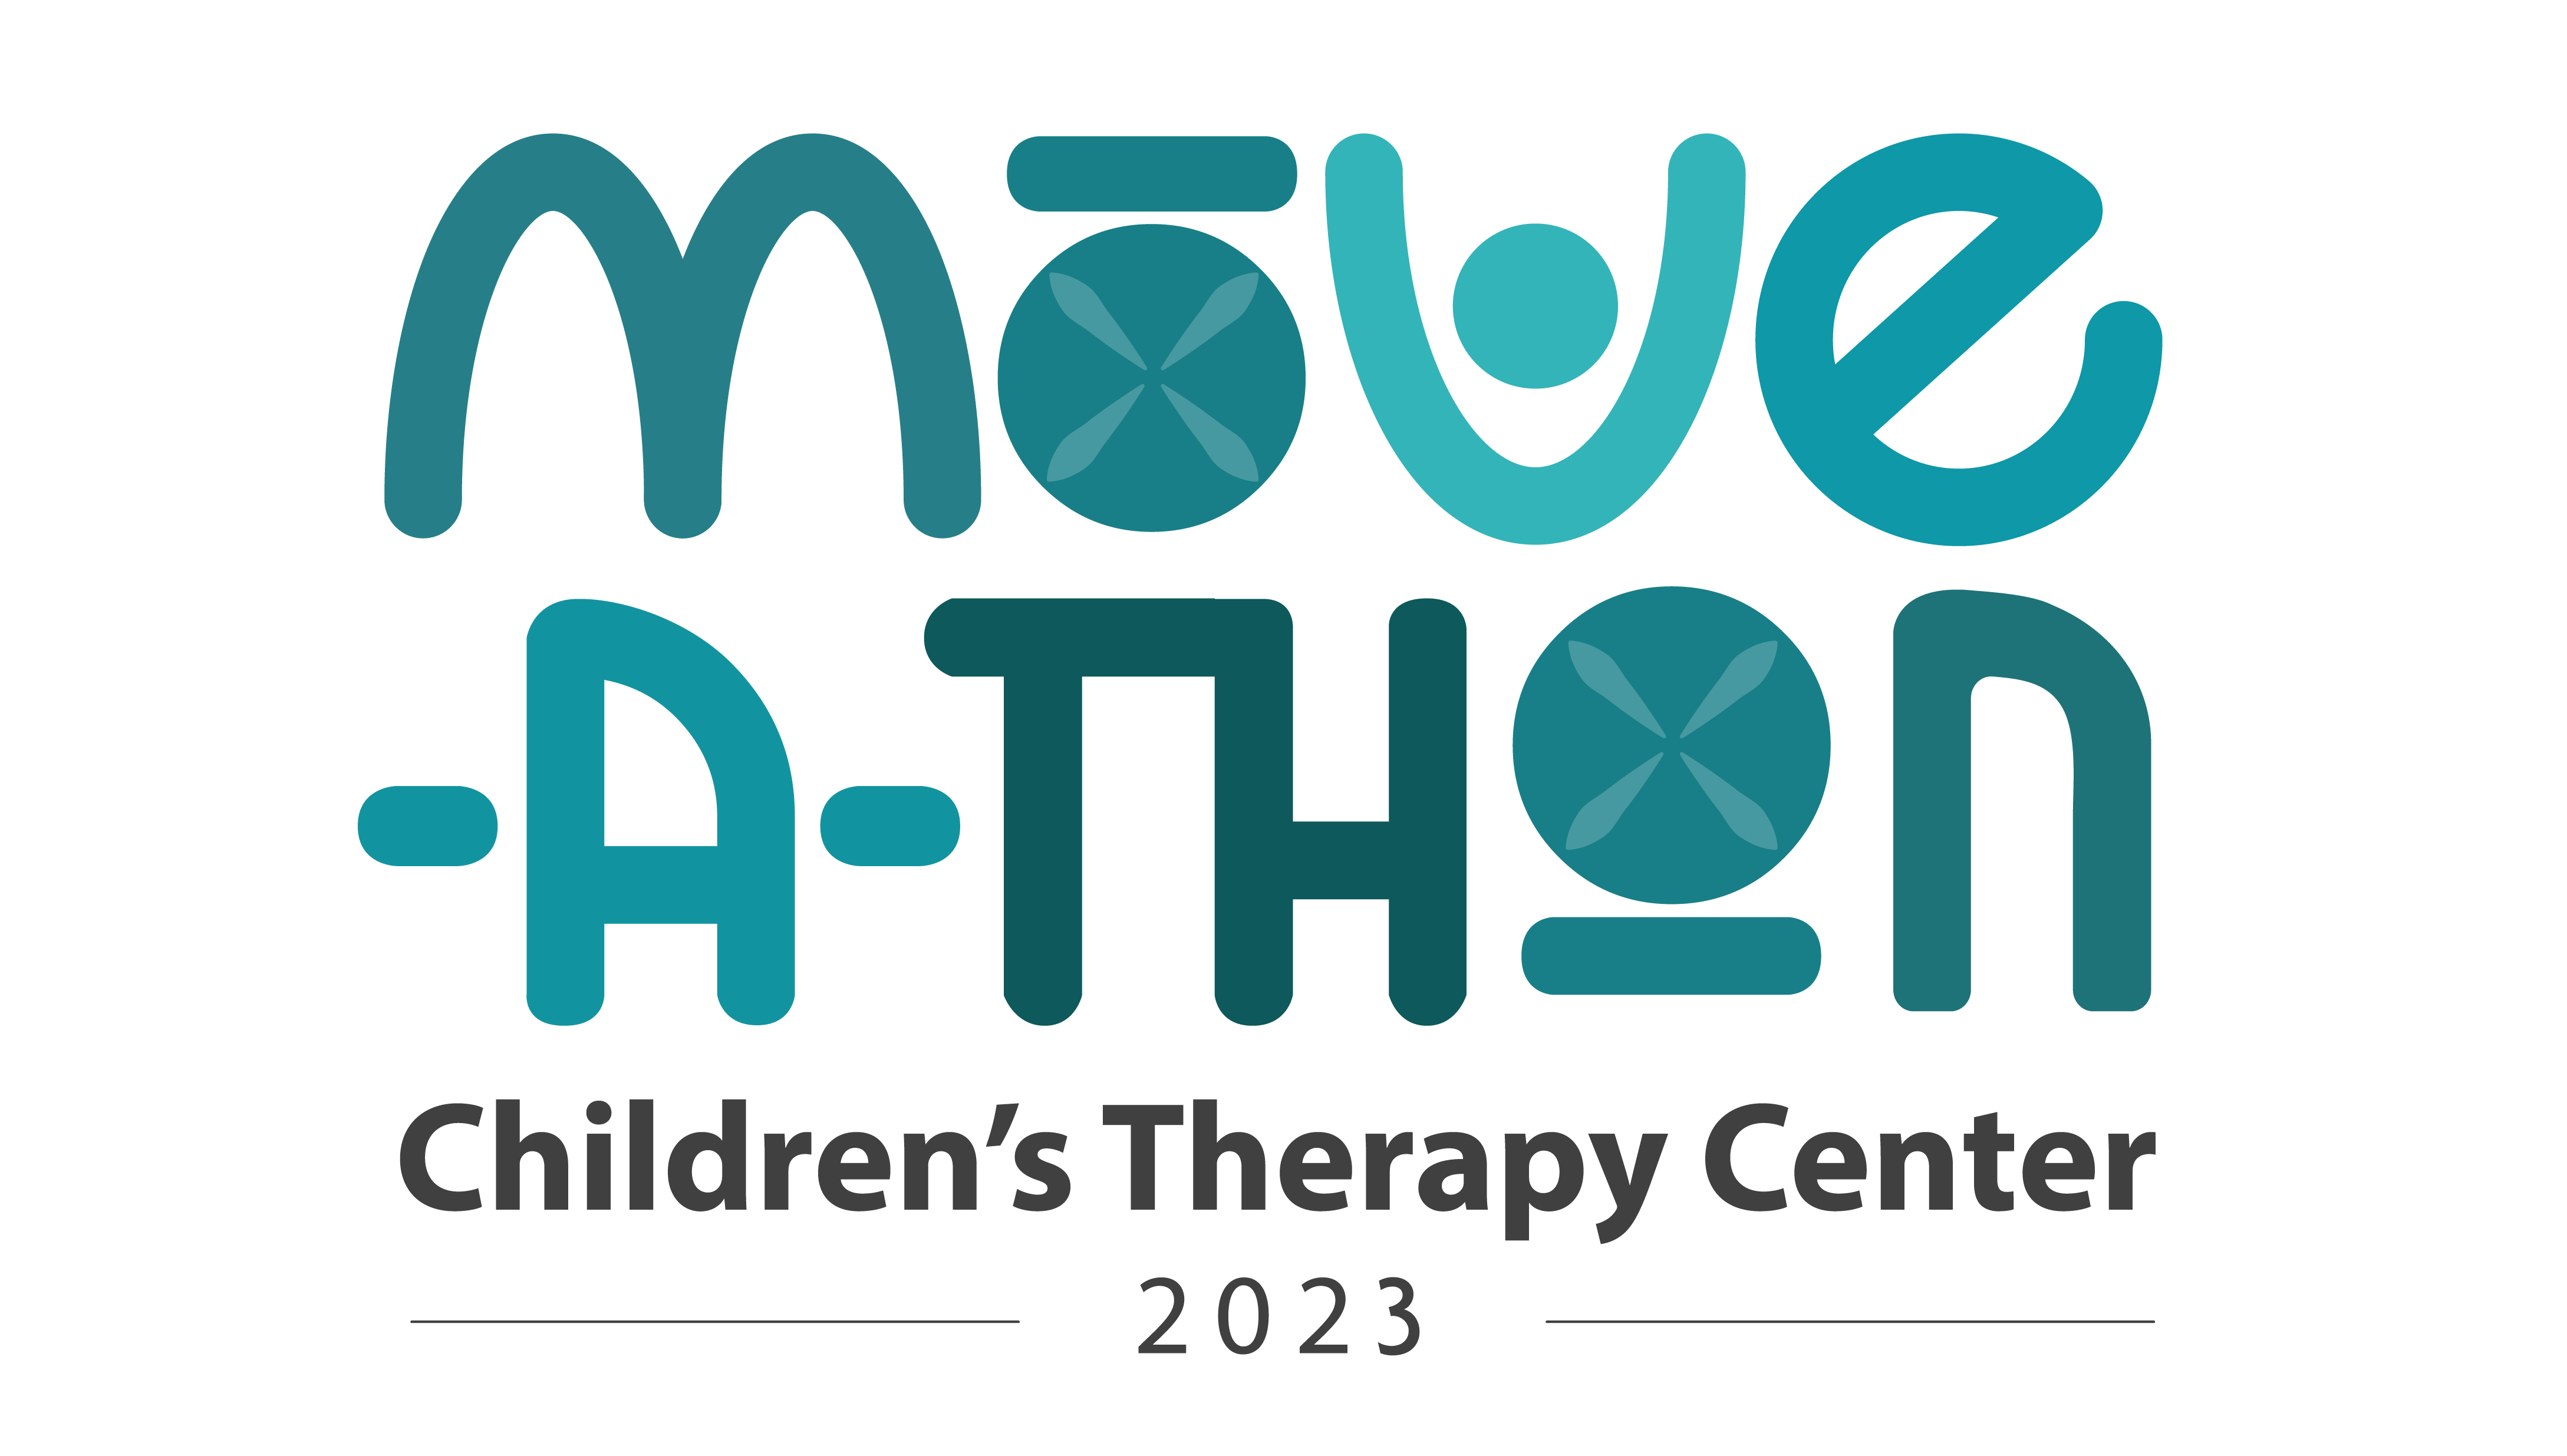 Move-A-Thon Children's Therapy Center 2023